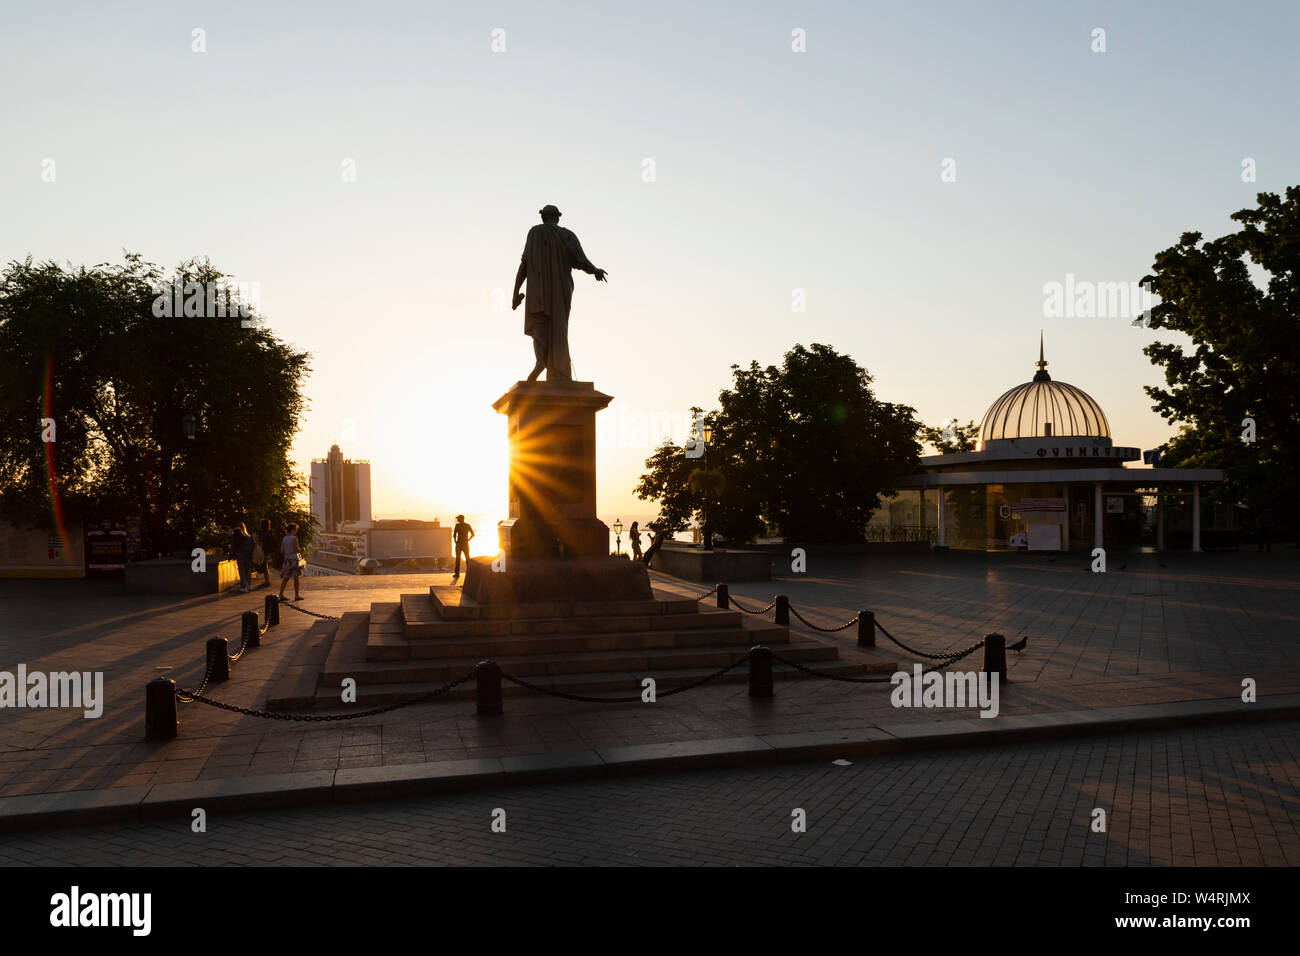 L'Ukraine, Odessa, Primorsky Boulevard, 13 juin 2019. Statue du duc de Richelieu en haut de l'Escalier de Potemkine à l'aube. Banque D'Images